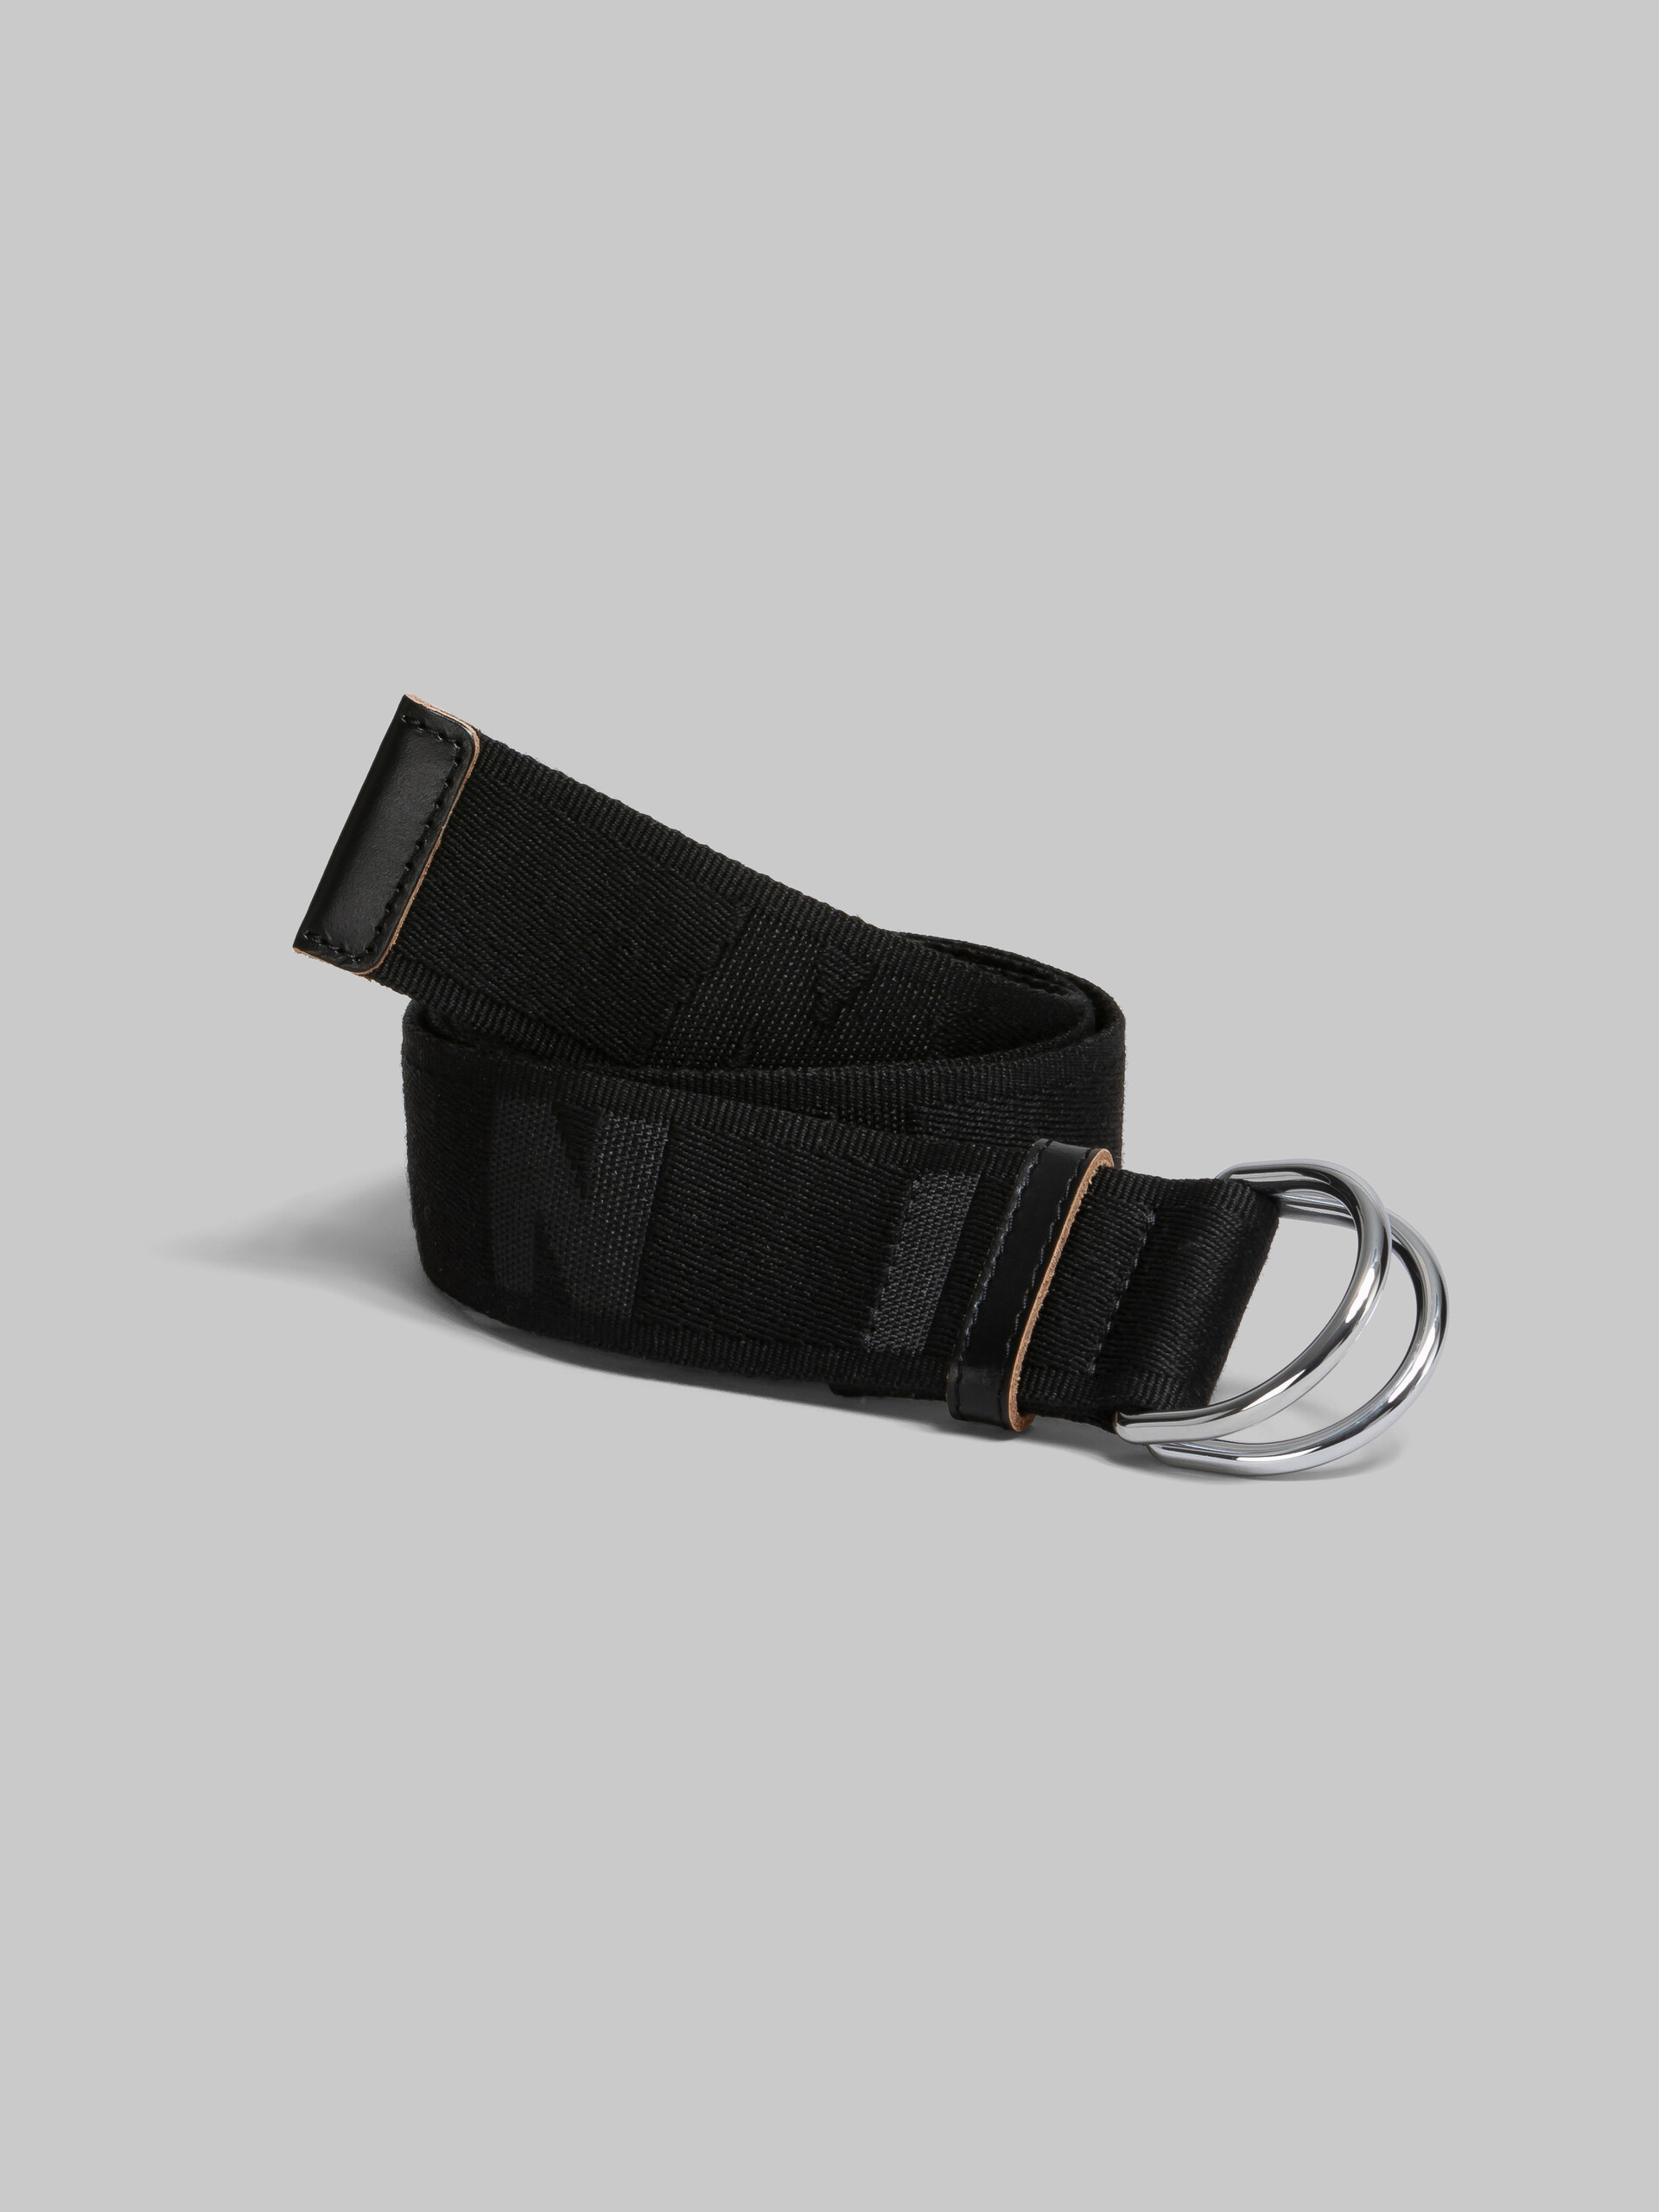 Cintura in nastro logato nero - Cintura - Image 2